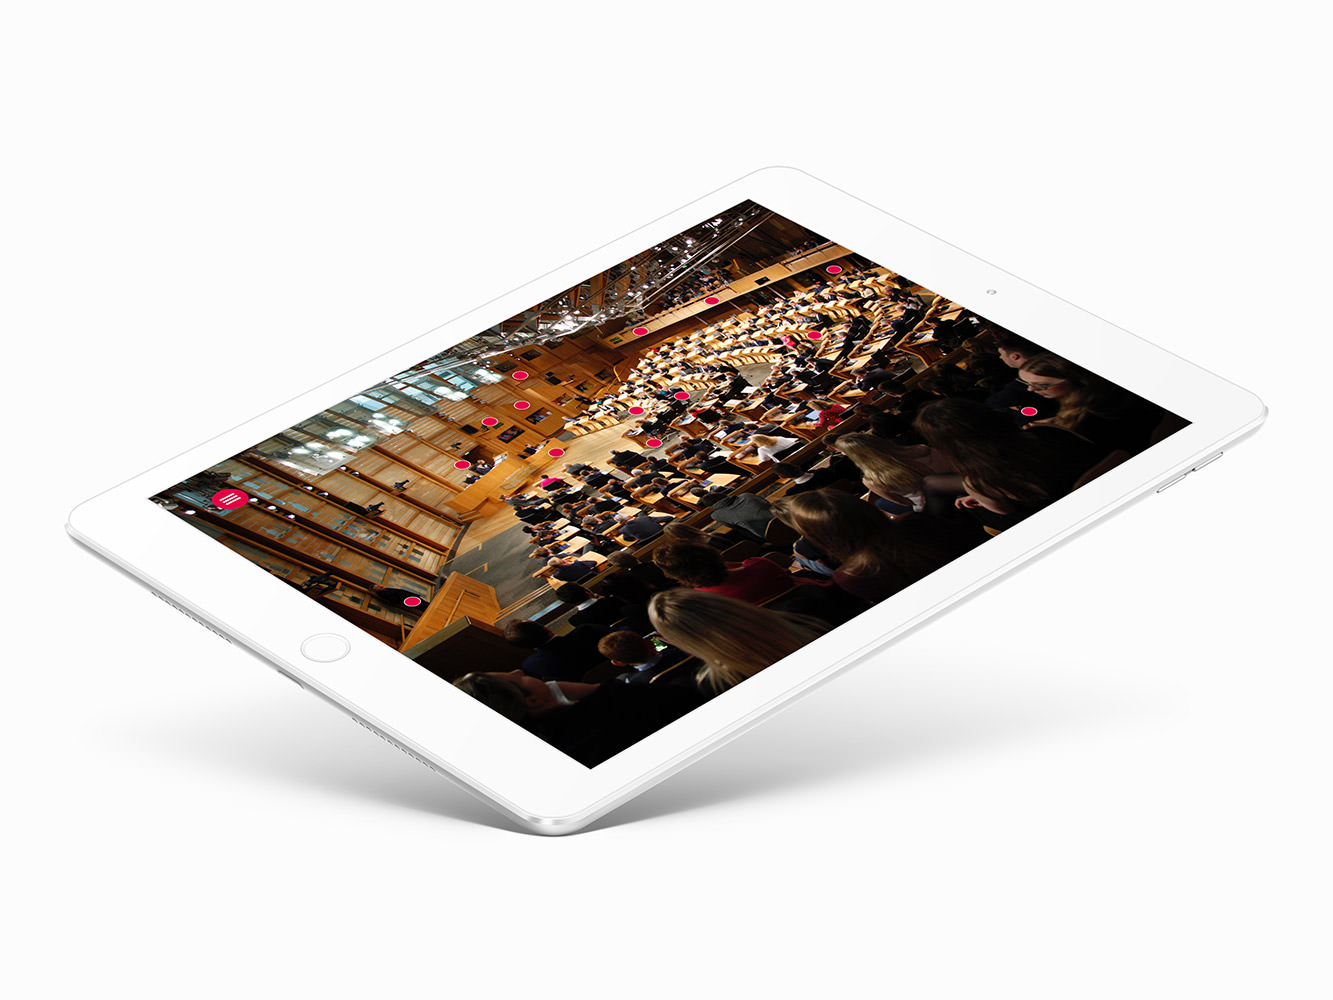 scottish parliament chamber app interactive hotspot screen